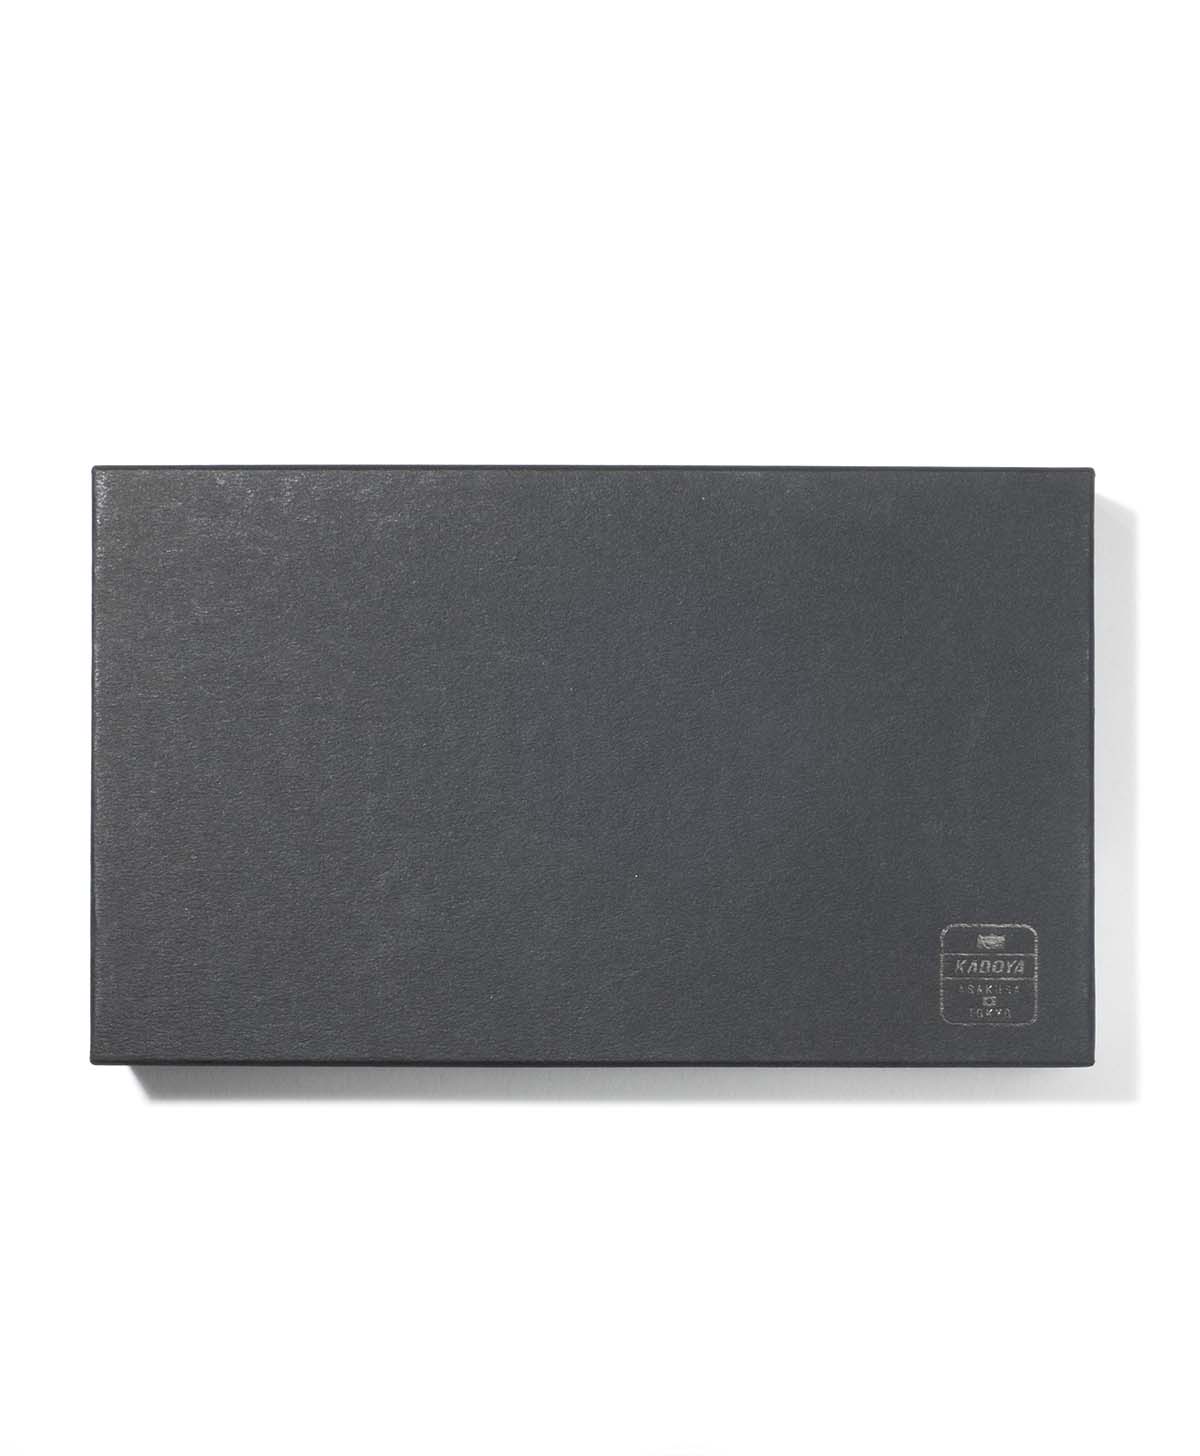 L portefeuille compact à zip / noir